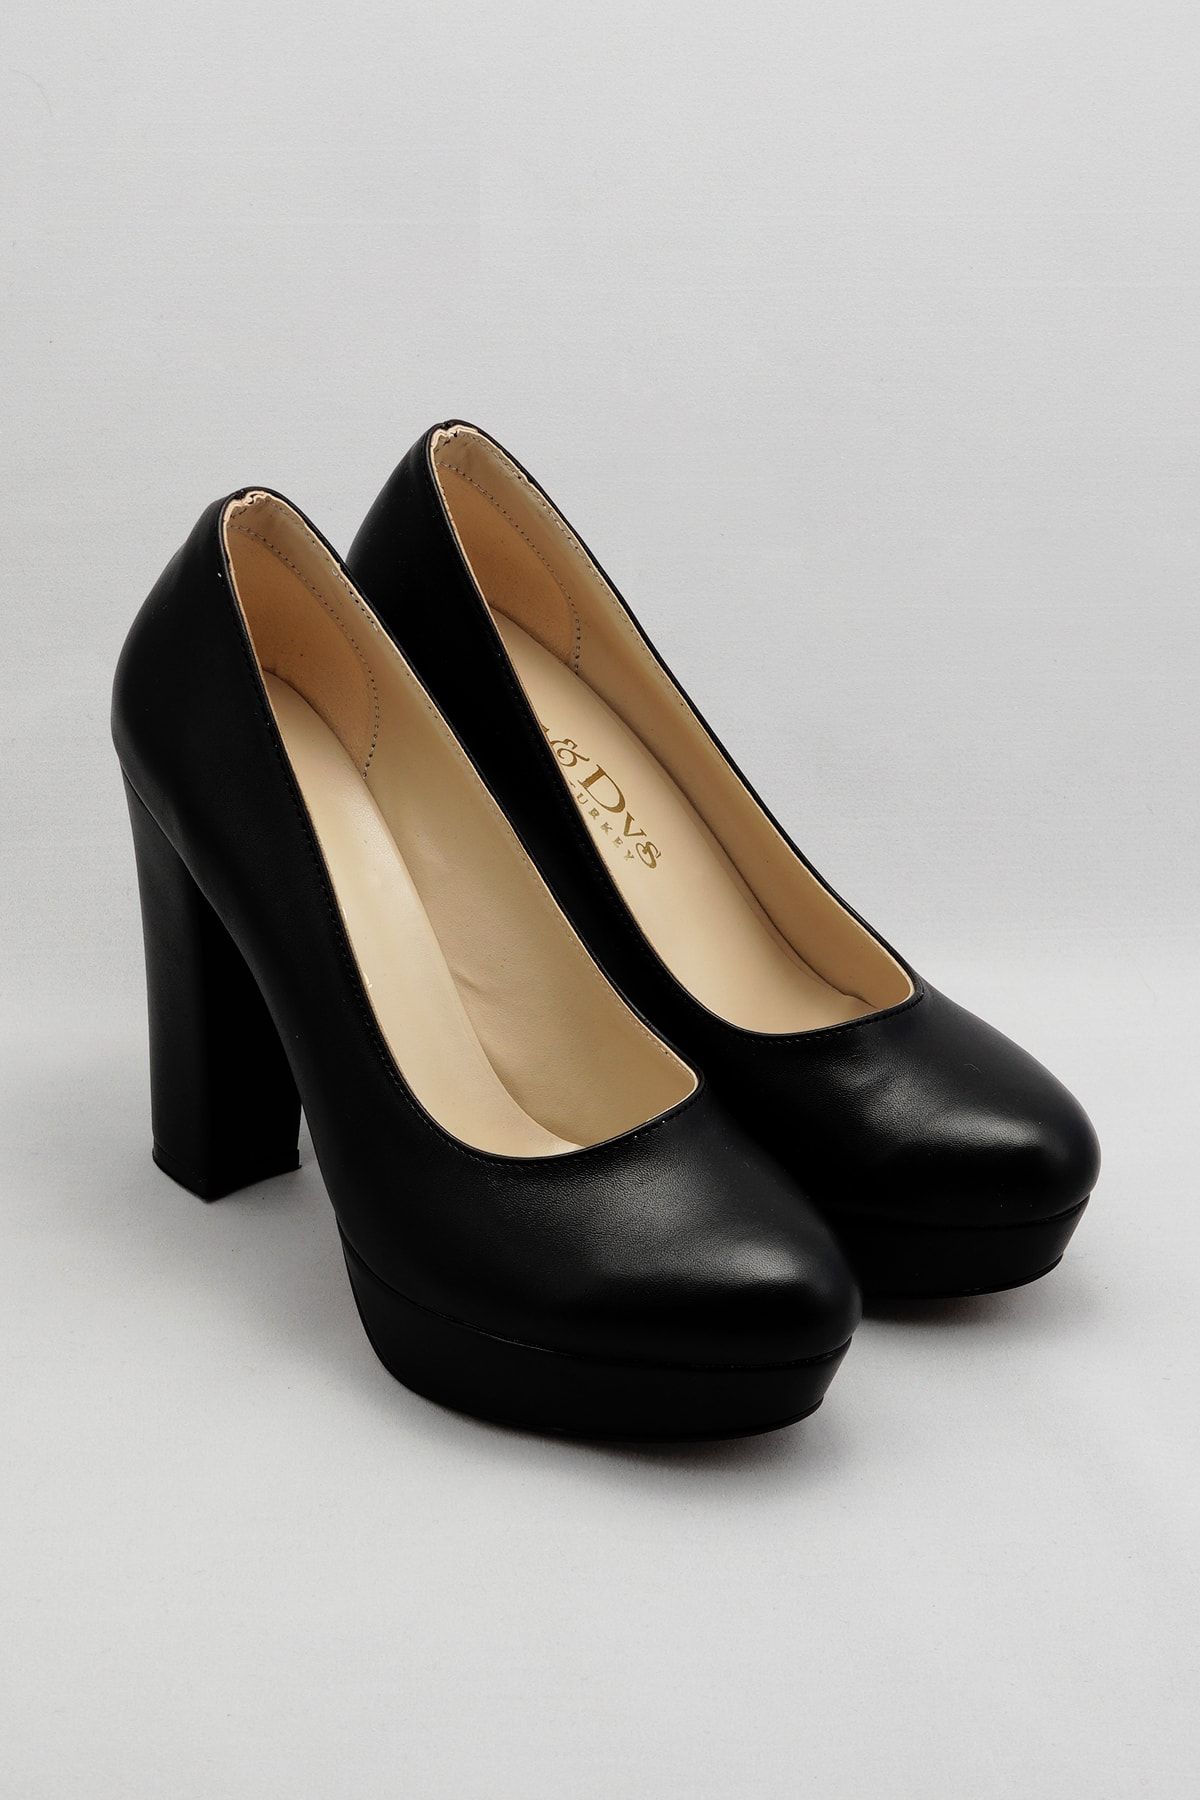 Çnr&Dvs Siyah Cilt Kadın Topuklu Ayakkabı 2002cnr